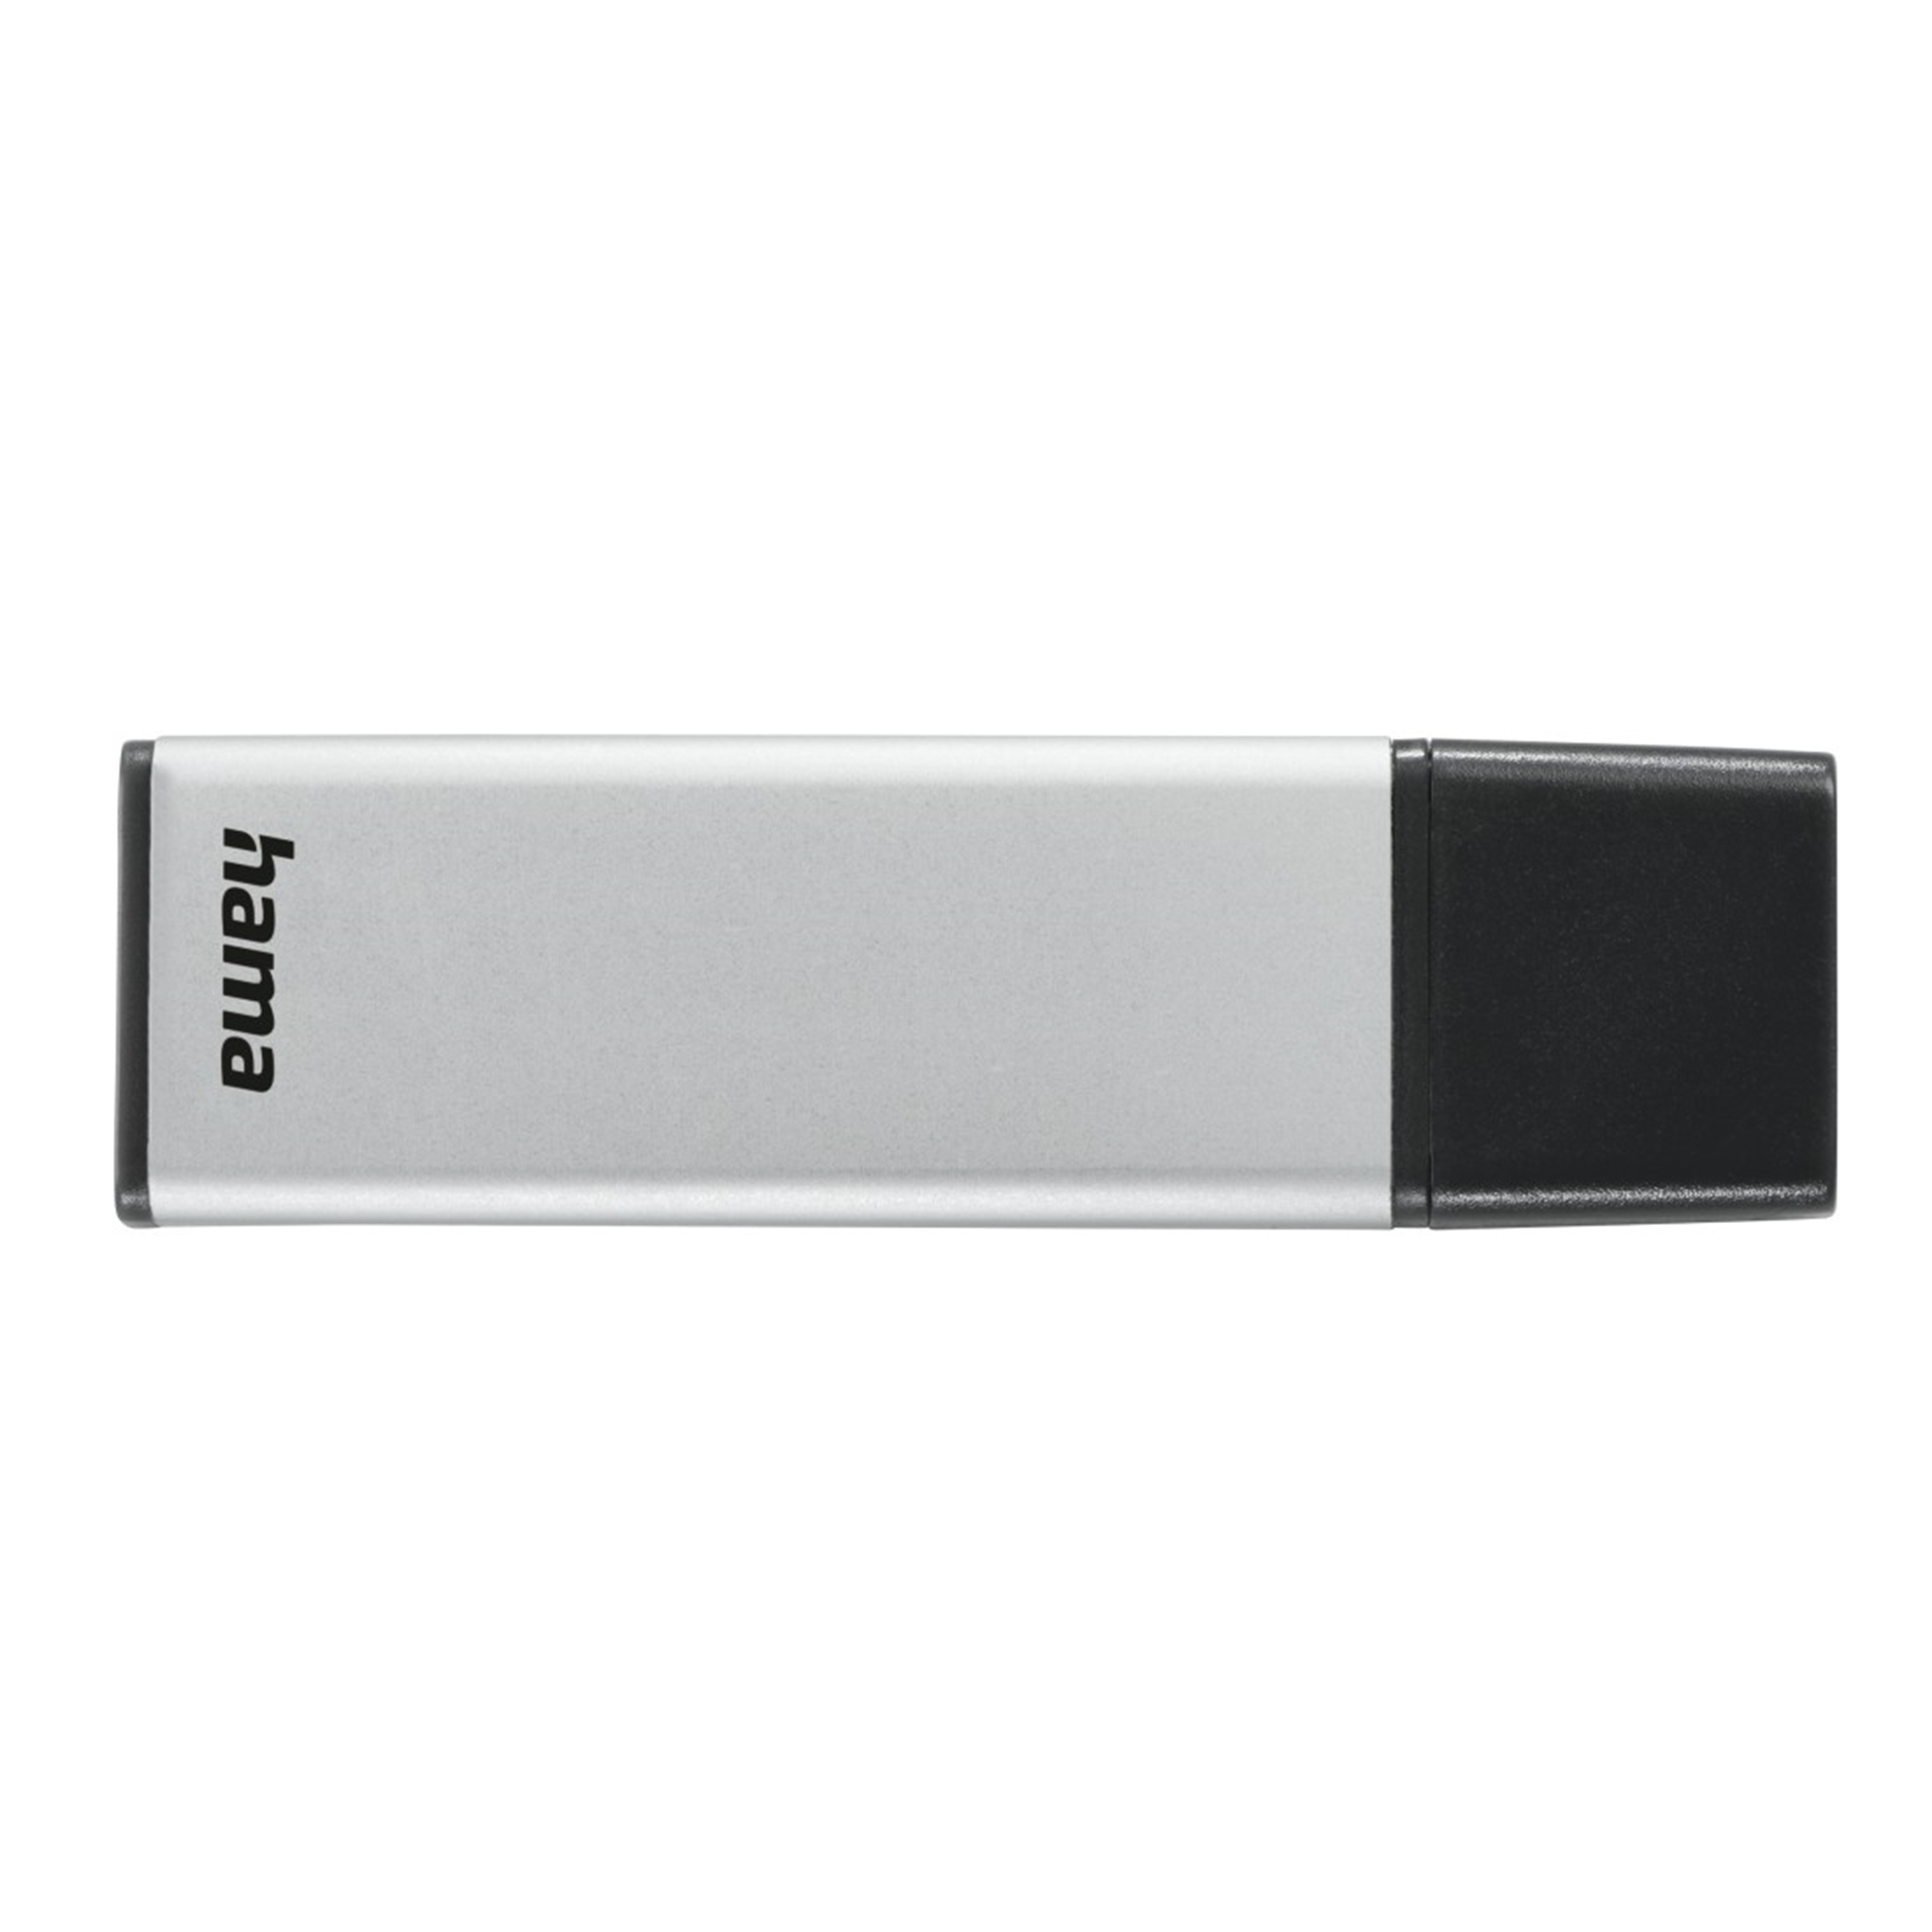 HAMA 32 32 Classic (Silber, GB USB-Stick GB)